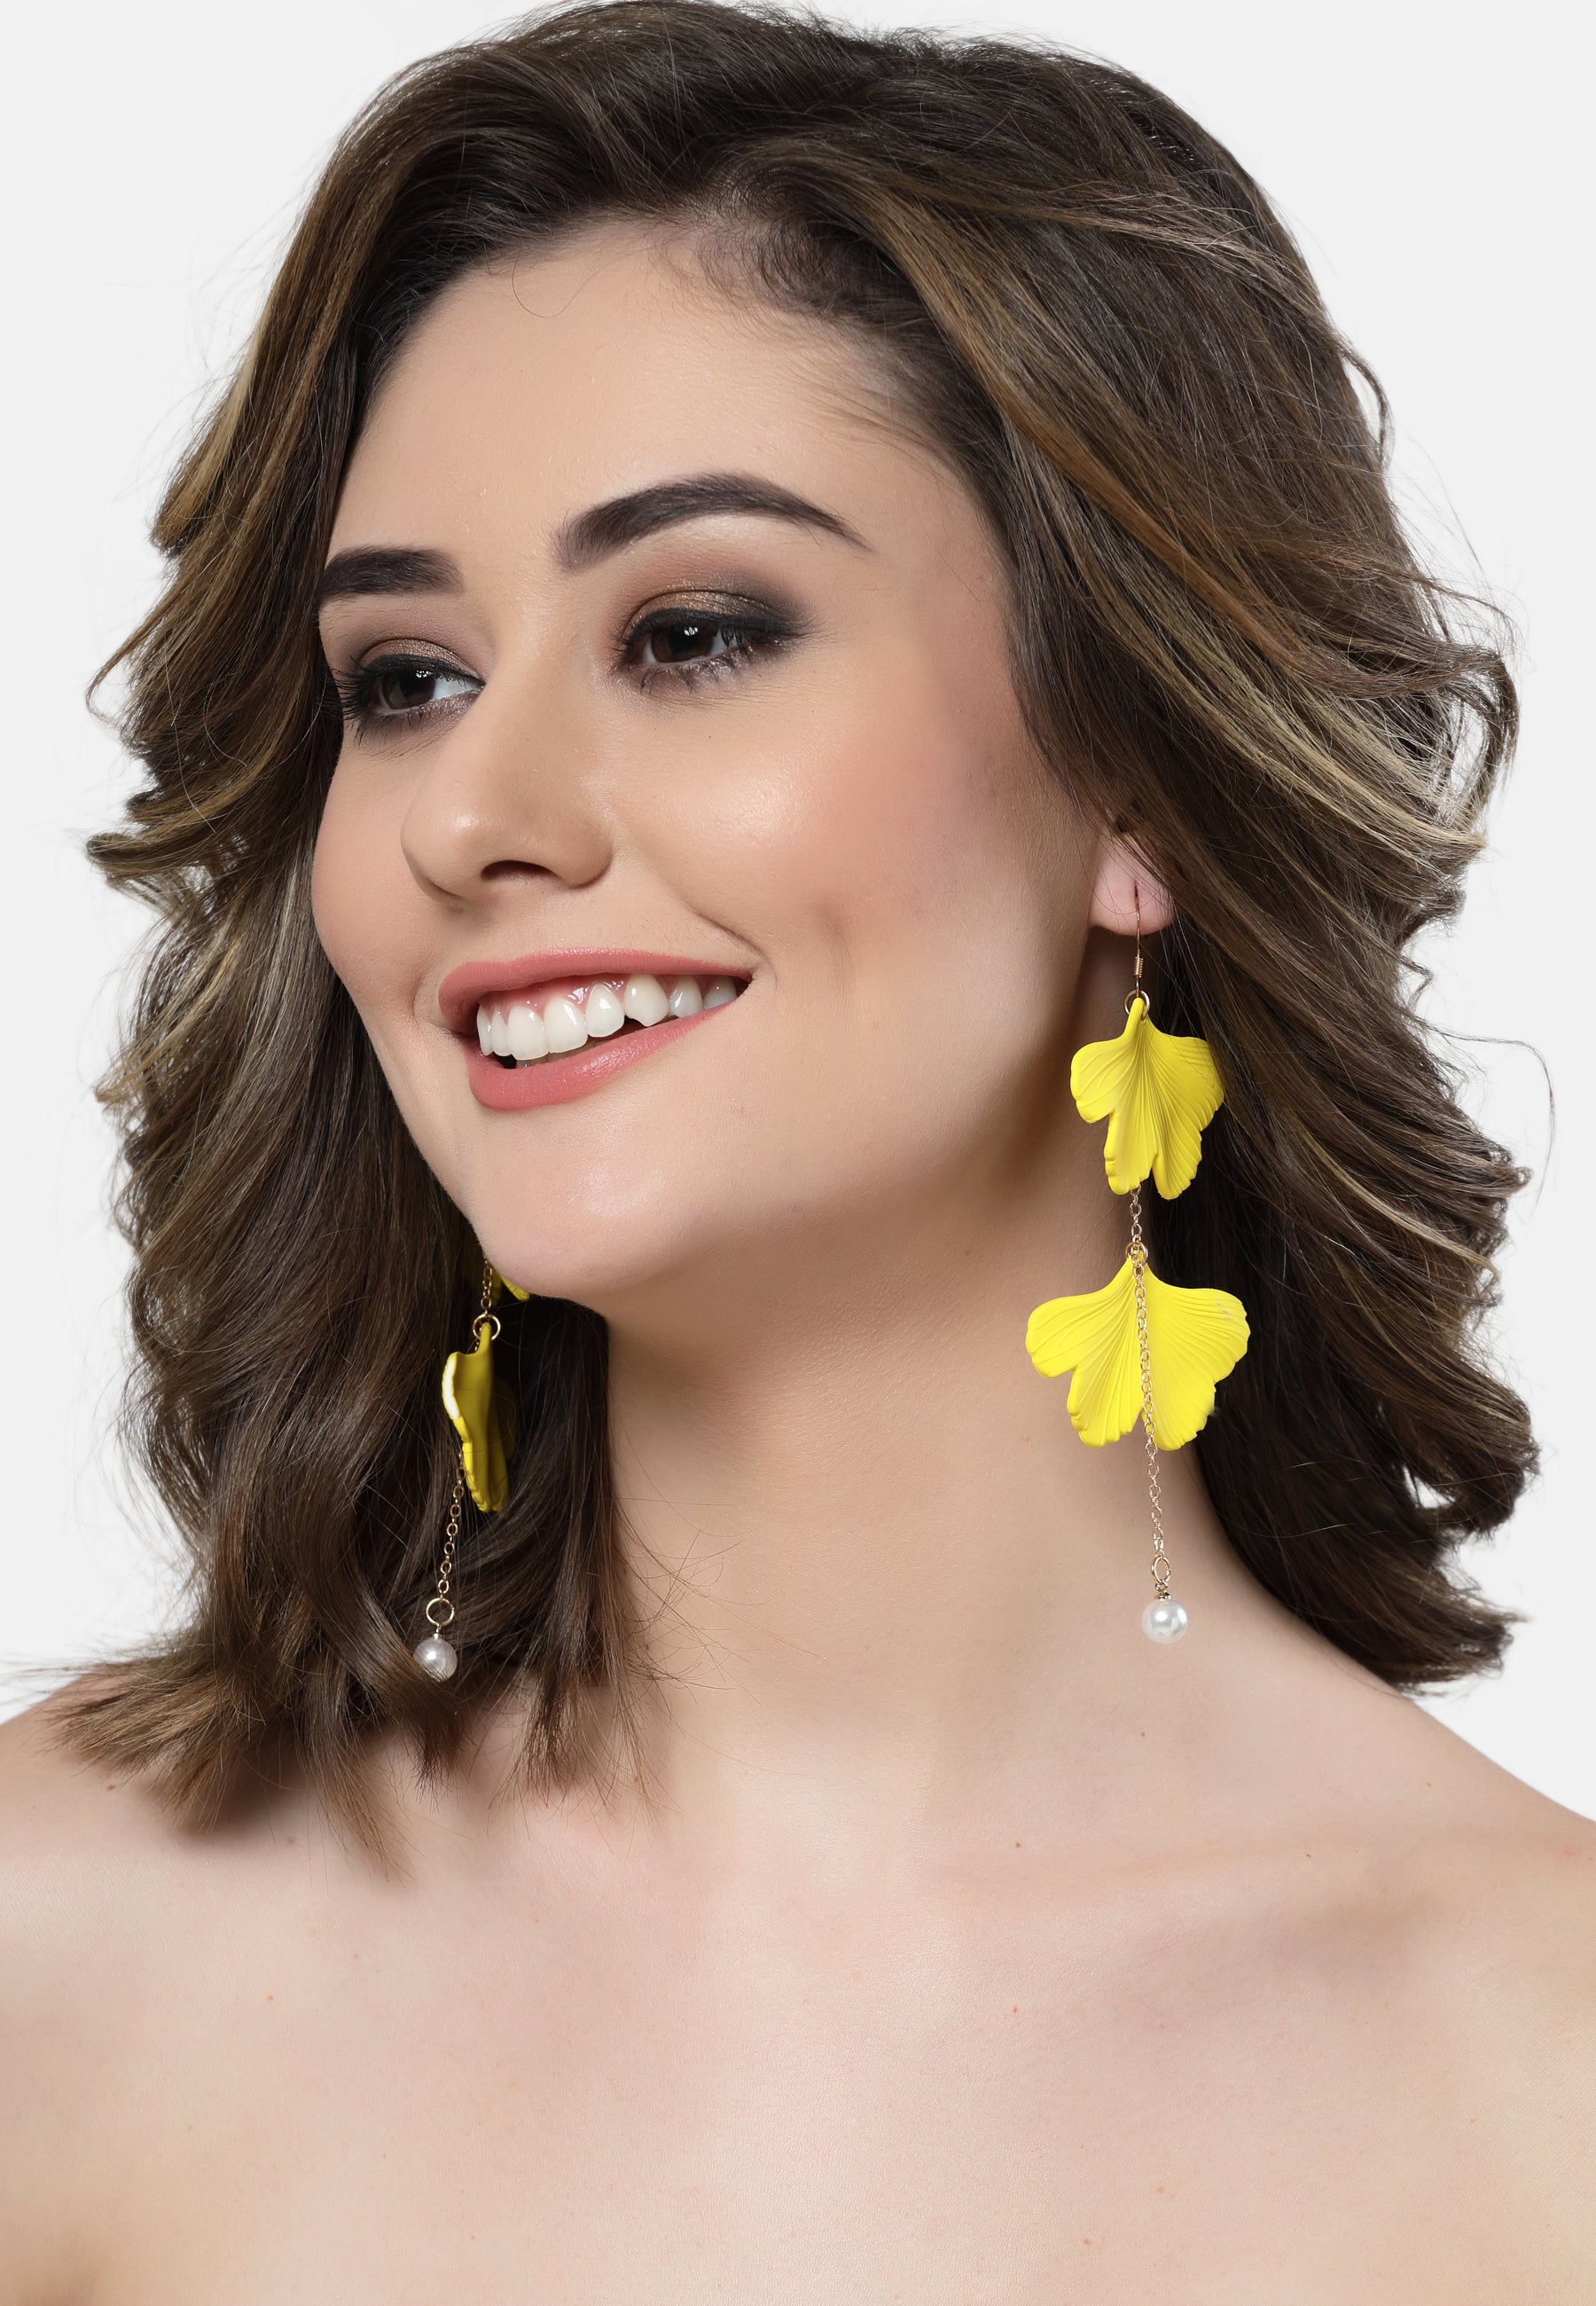 Plys kronbladsformede lange øreringe i gul